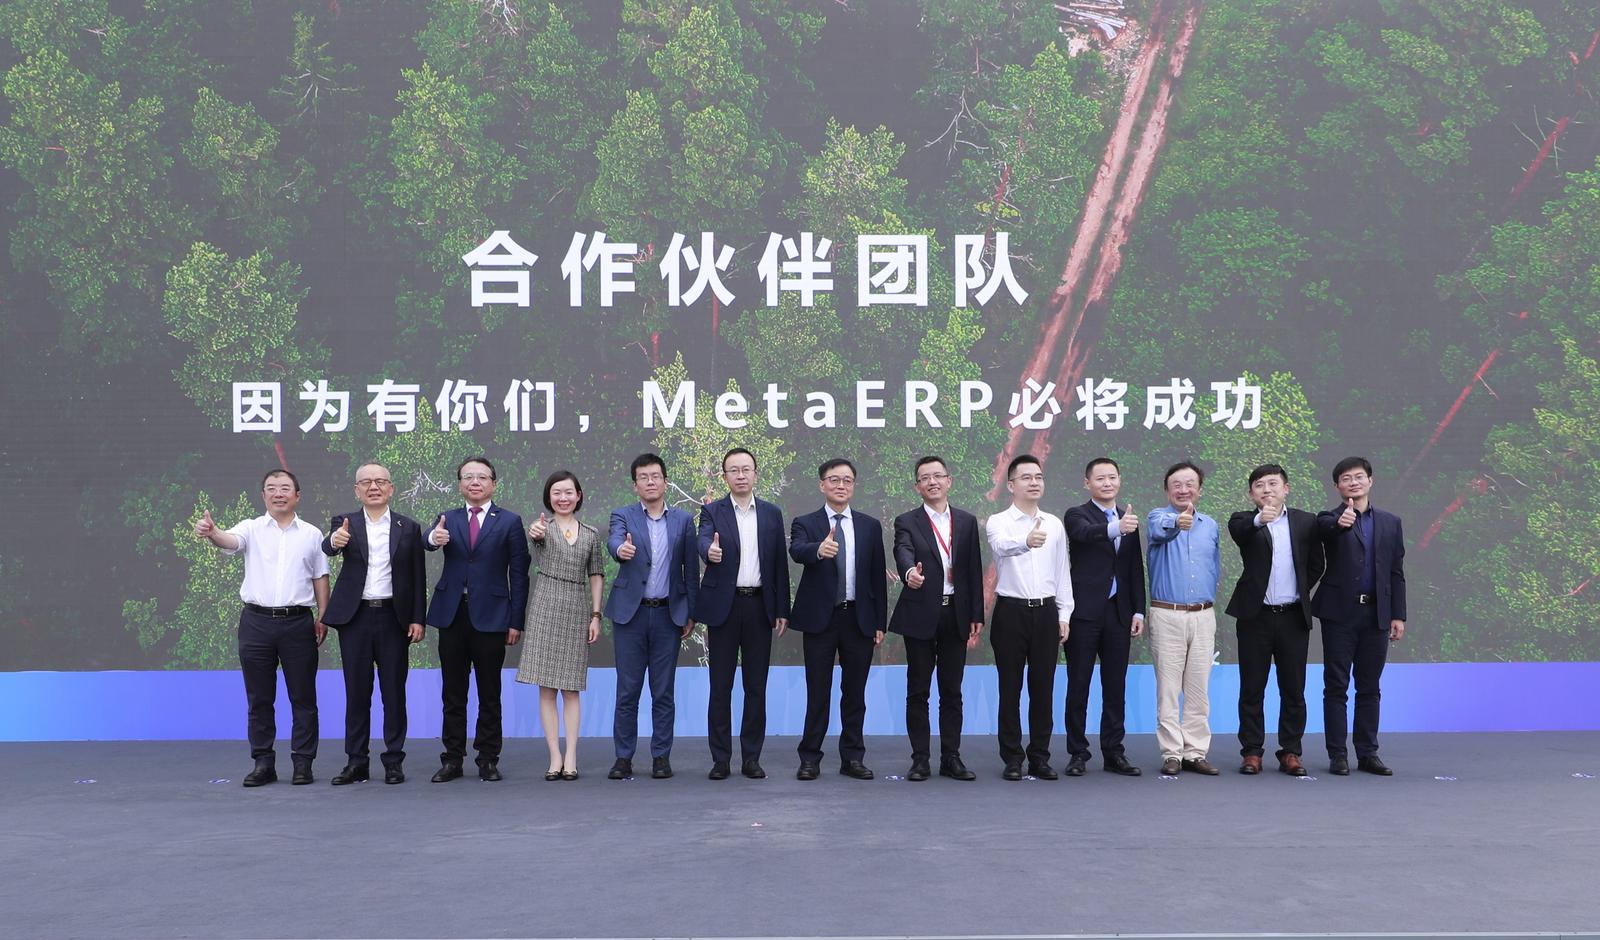 华为宣布实现自主可控的MetaERP研发 任正非感谢合作伙伴